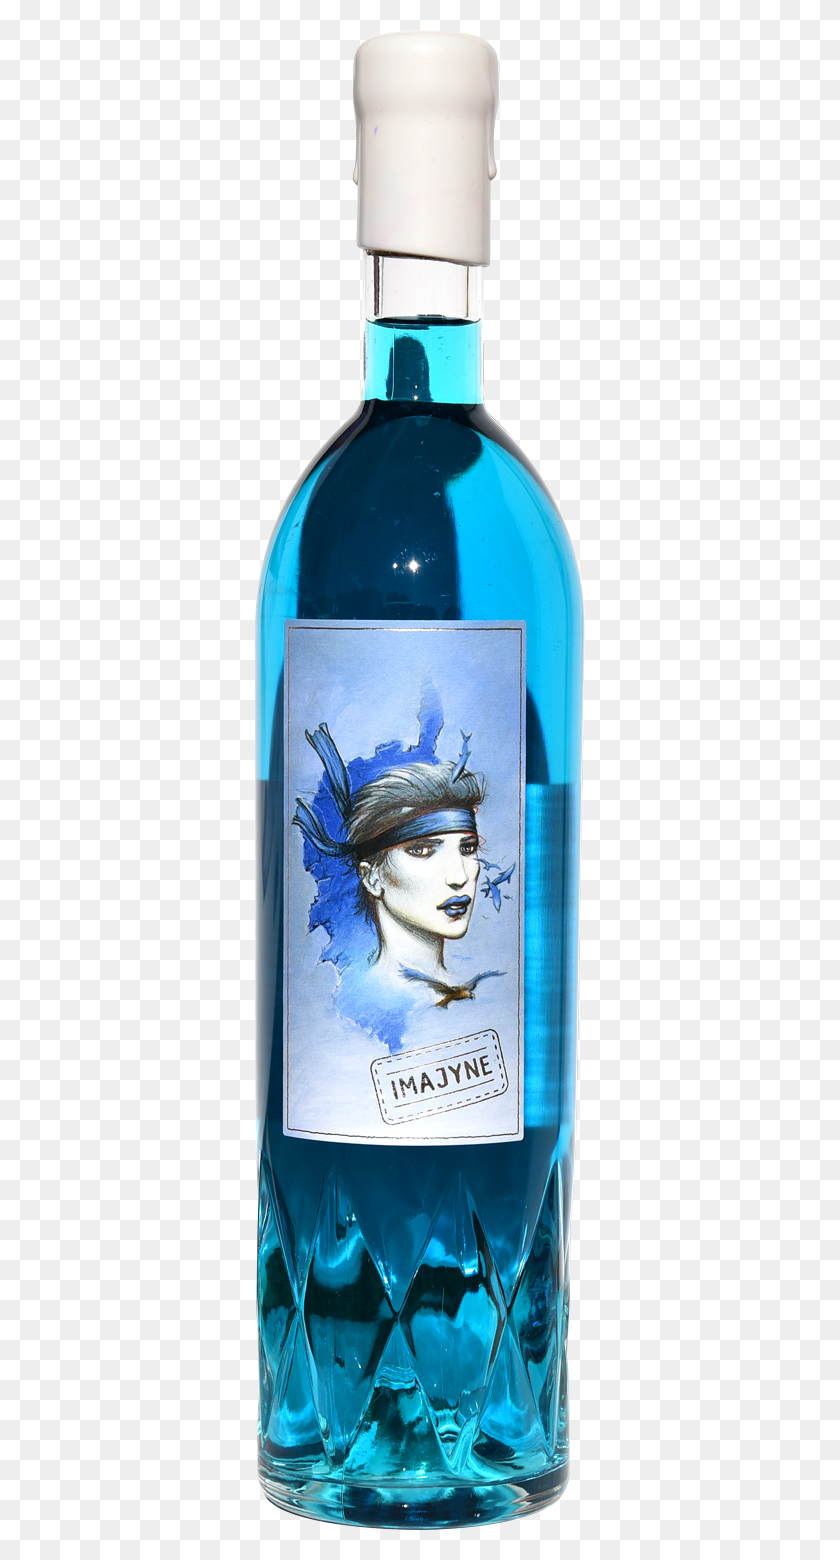 331x1500 Descargar Érase Una Vez Había Una Isla Envuelta En La Hermosa Vin Bleu Corse Imajyne, Arte Moderno, Persona Hd Png